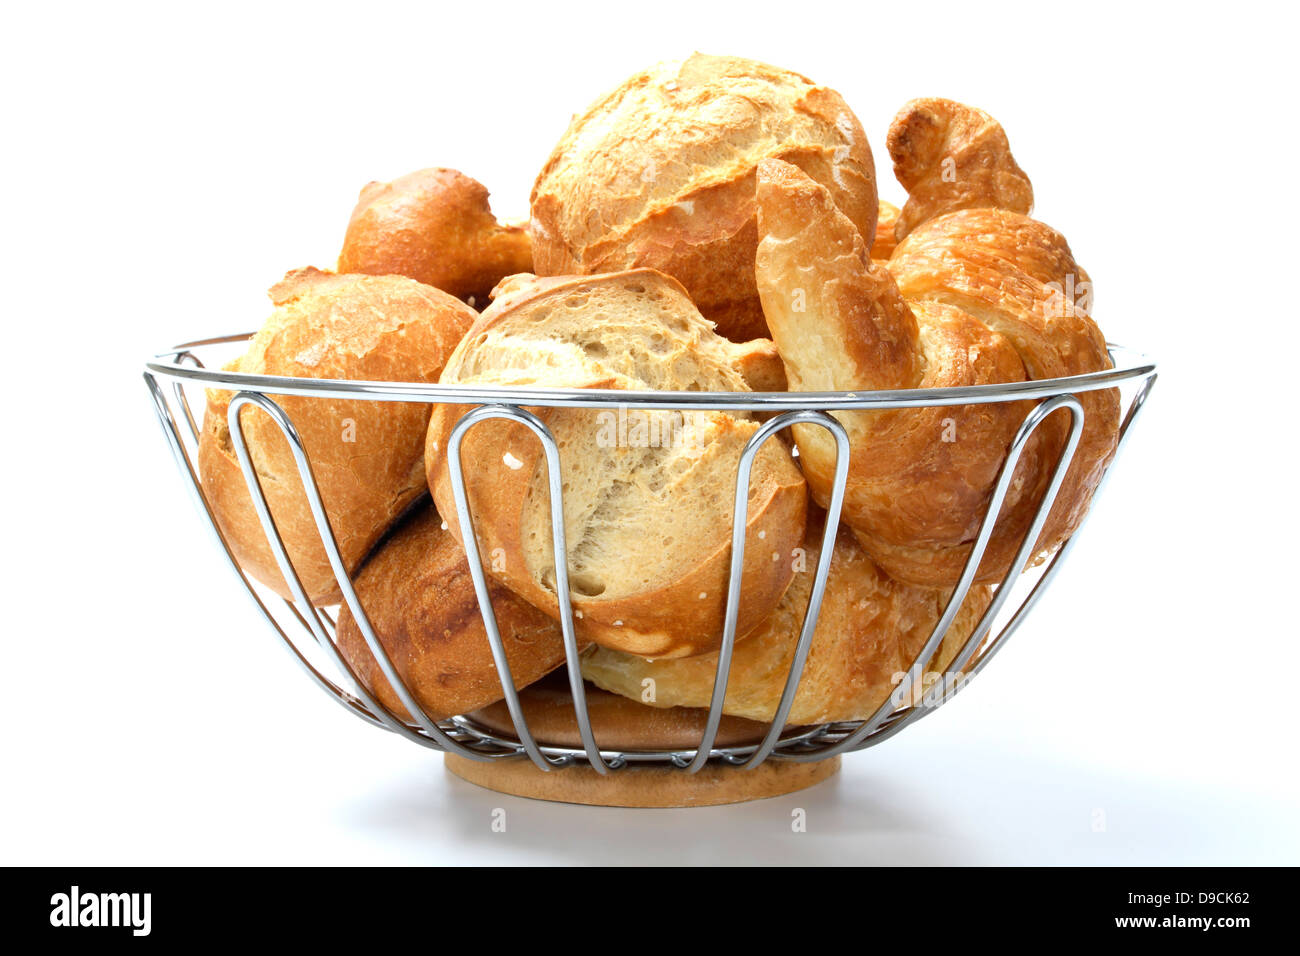 Los bollos de pan y croissants en la cesta Foto de stock